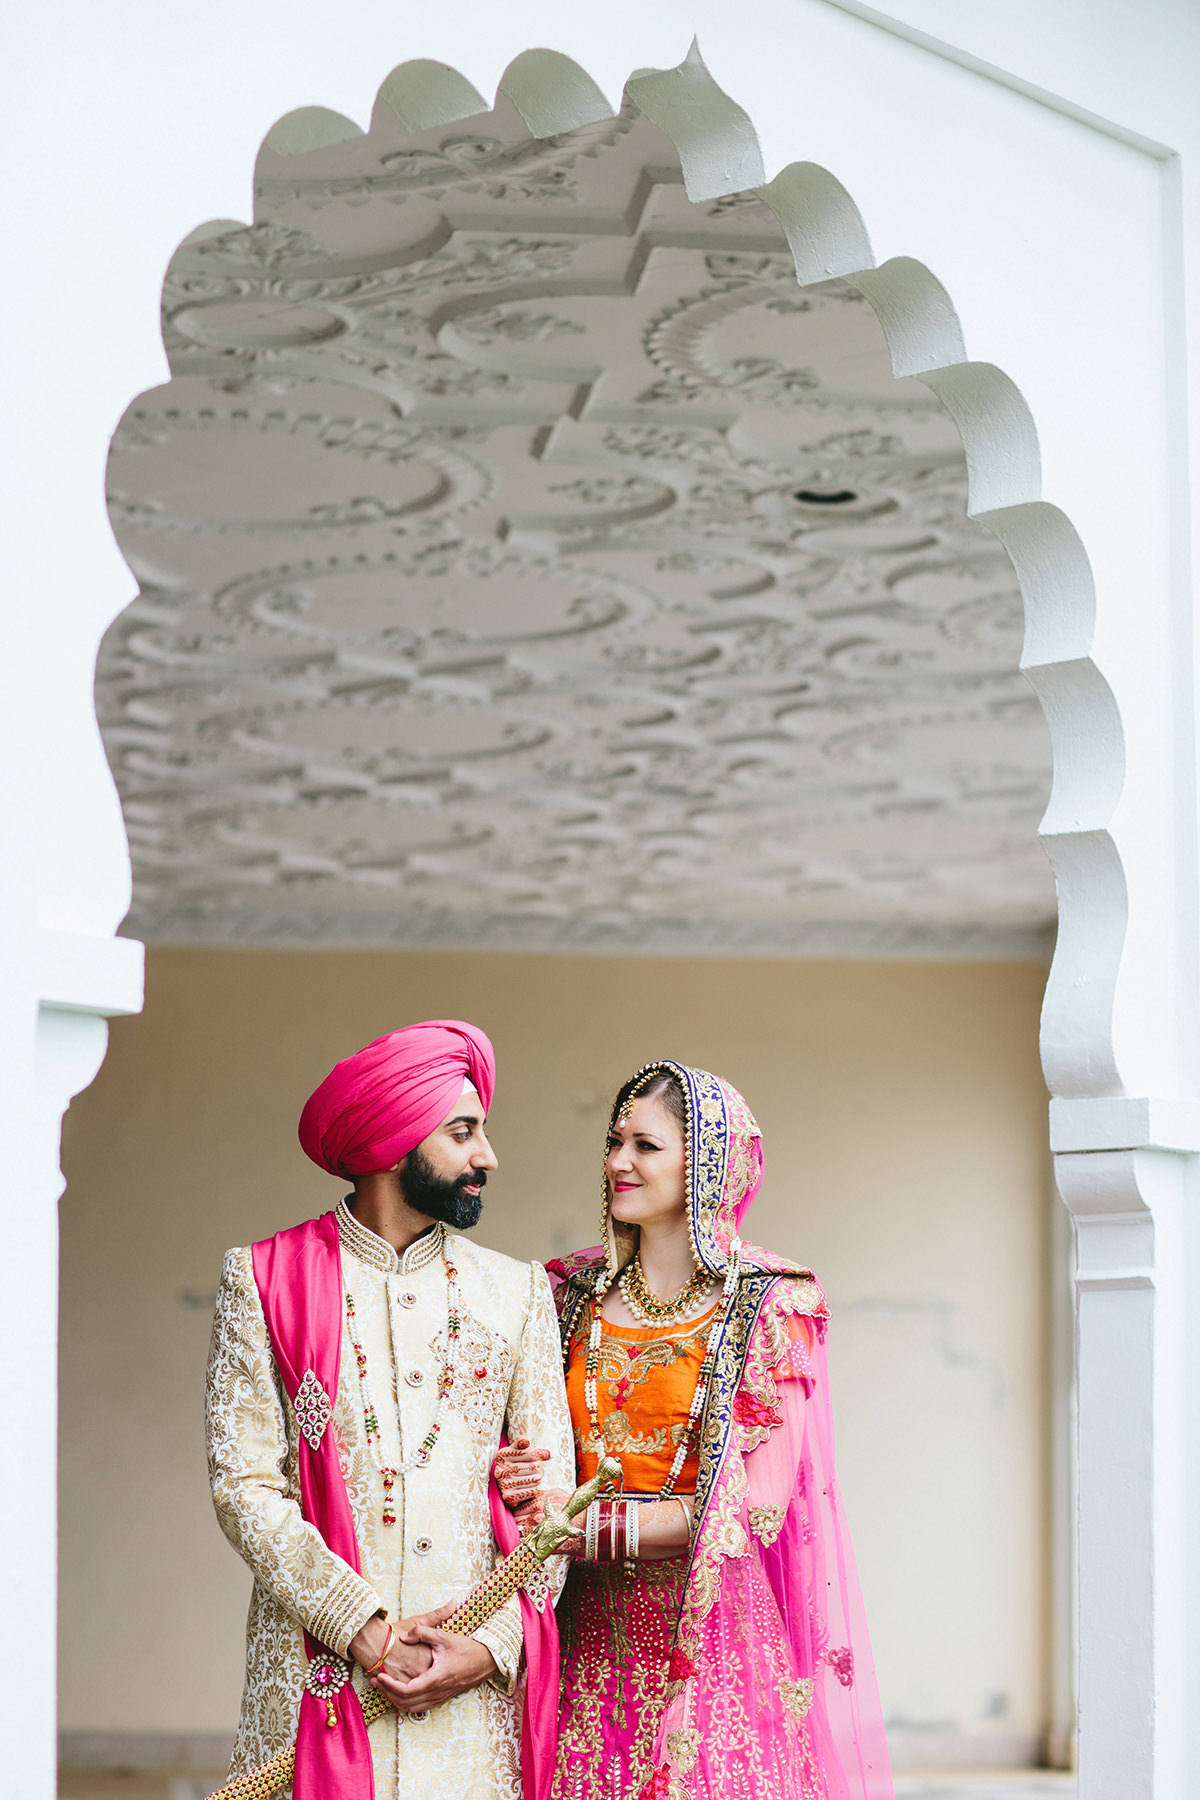 Wedding portraits. Indian wedding | Indian wedding photography couples,  Indian wedding photography poses, Wedding couple poses photography